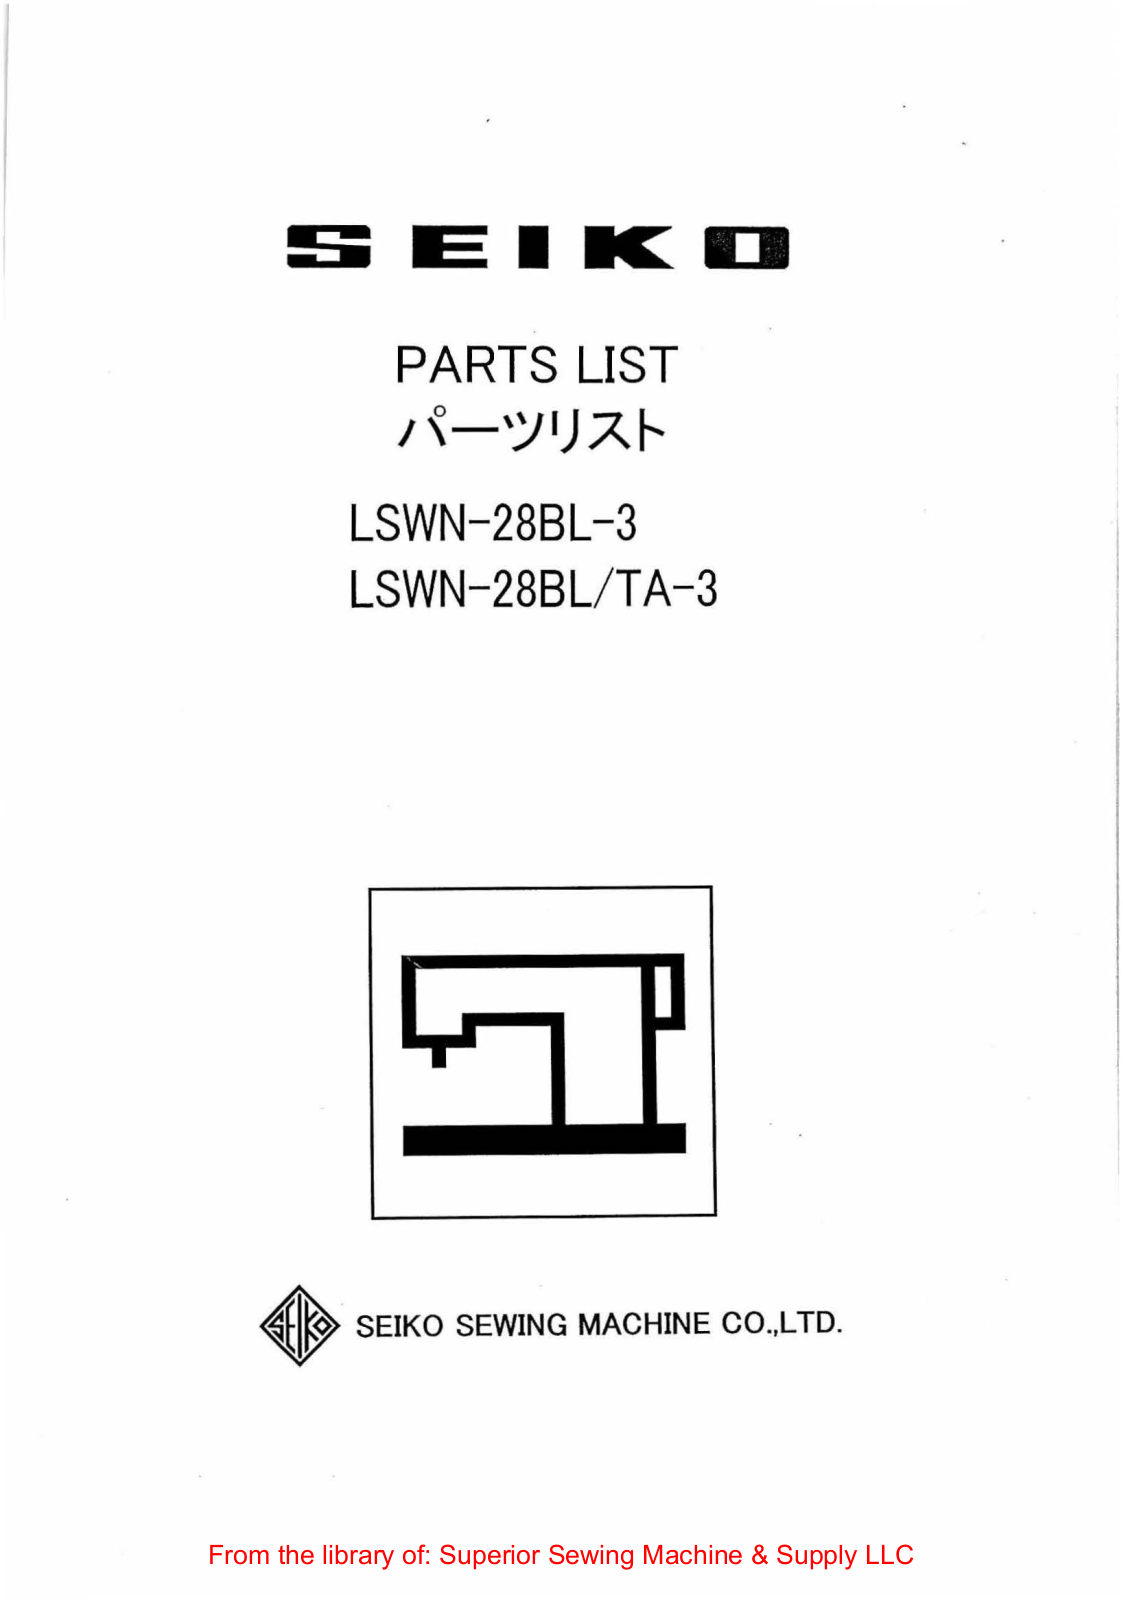 Seiko LSWN-28BL-3, LSWN-28BL-TA-3 Manual